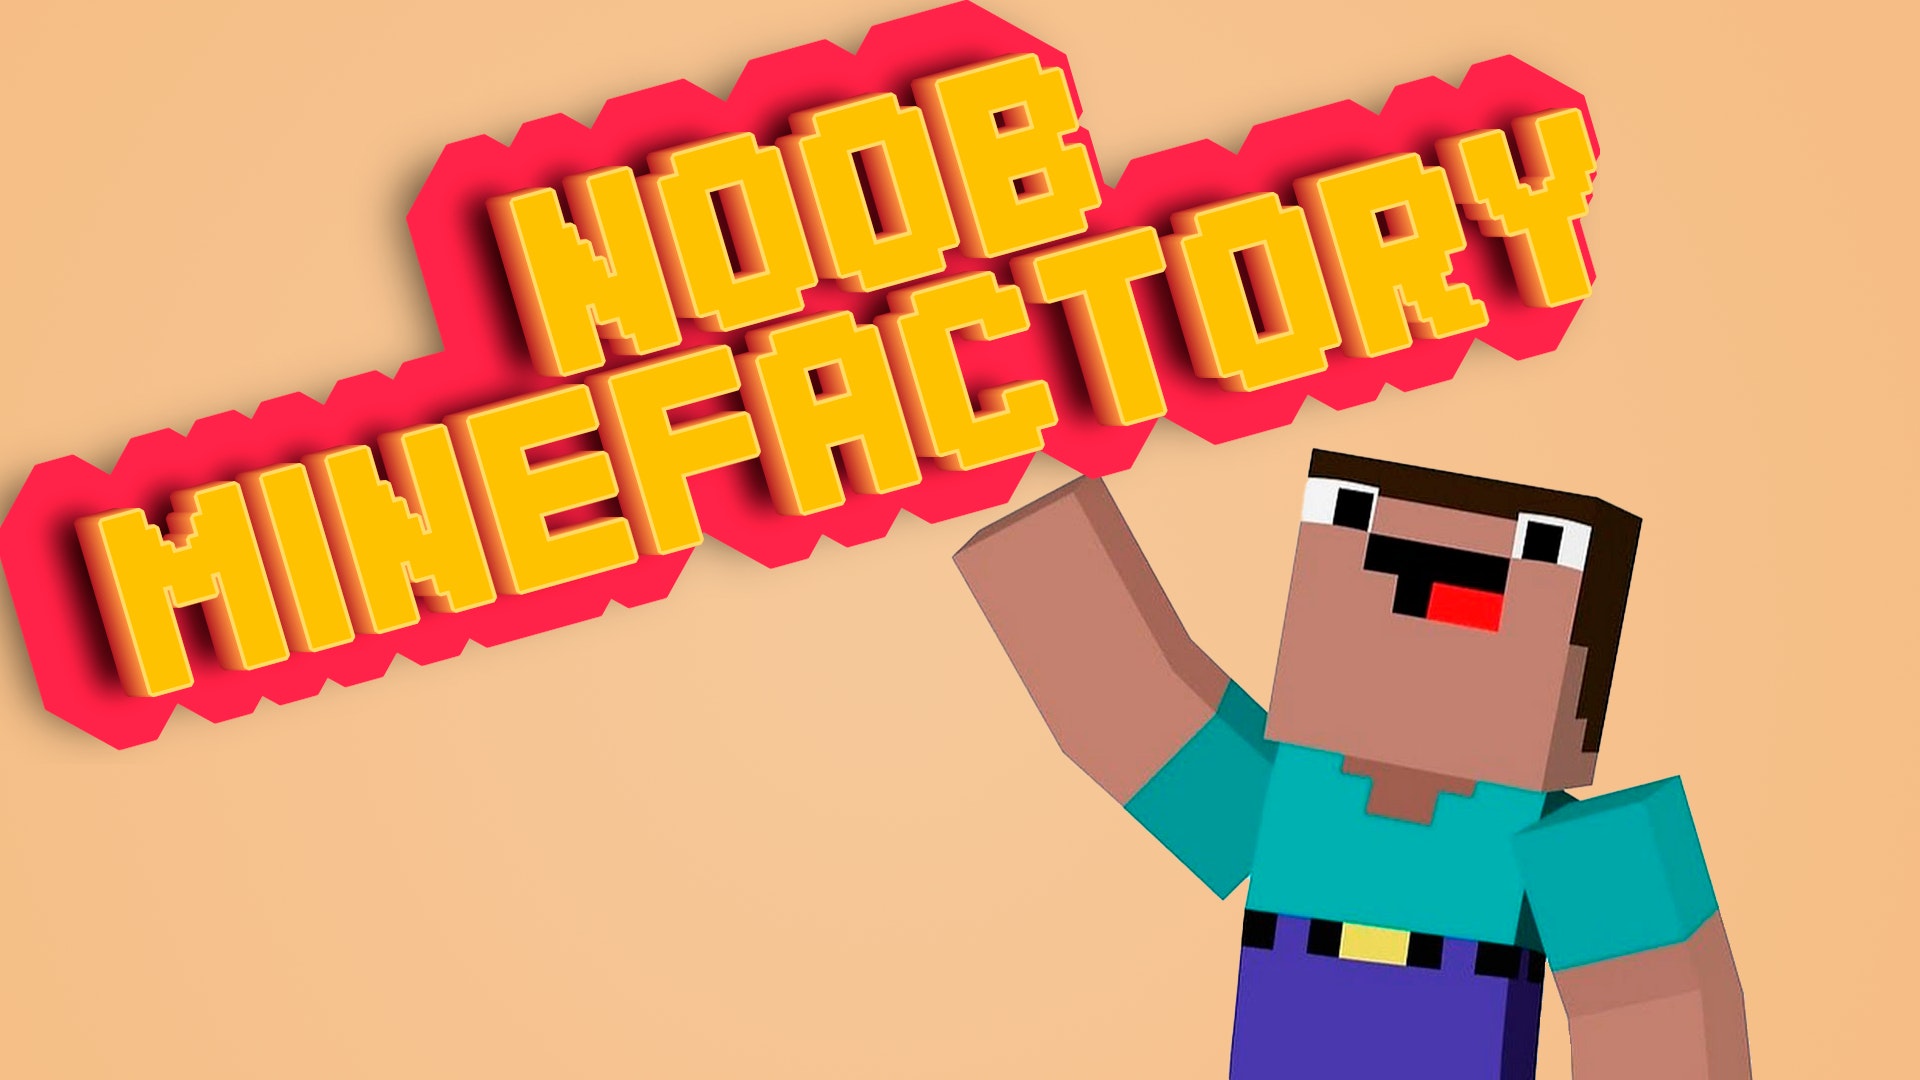 Noob Miner: Escape From Prison - Click Jogos